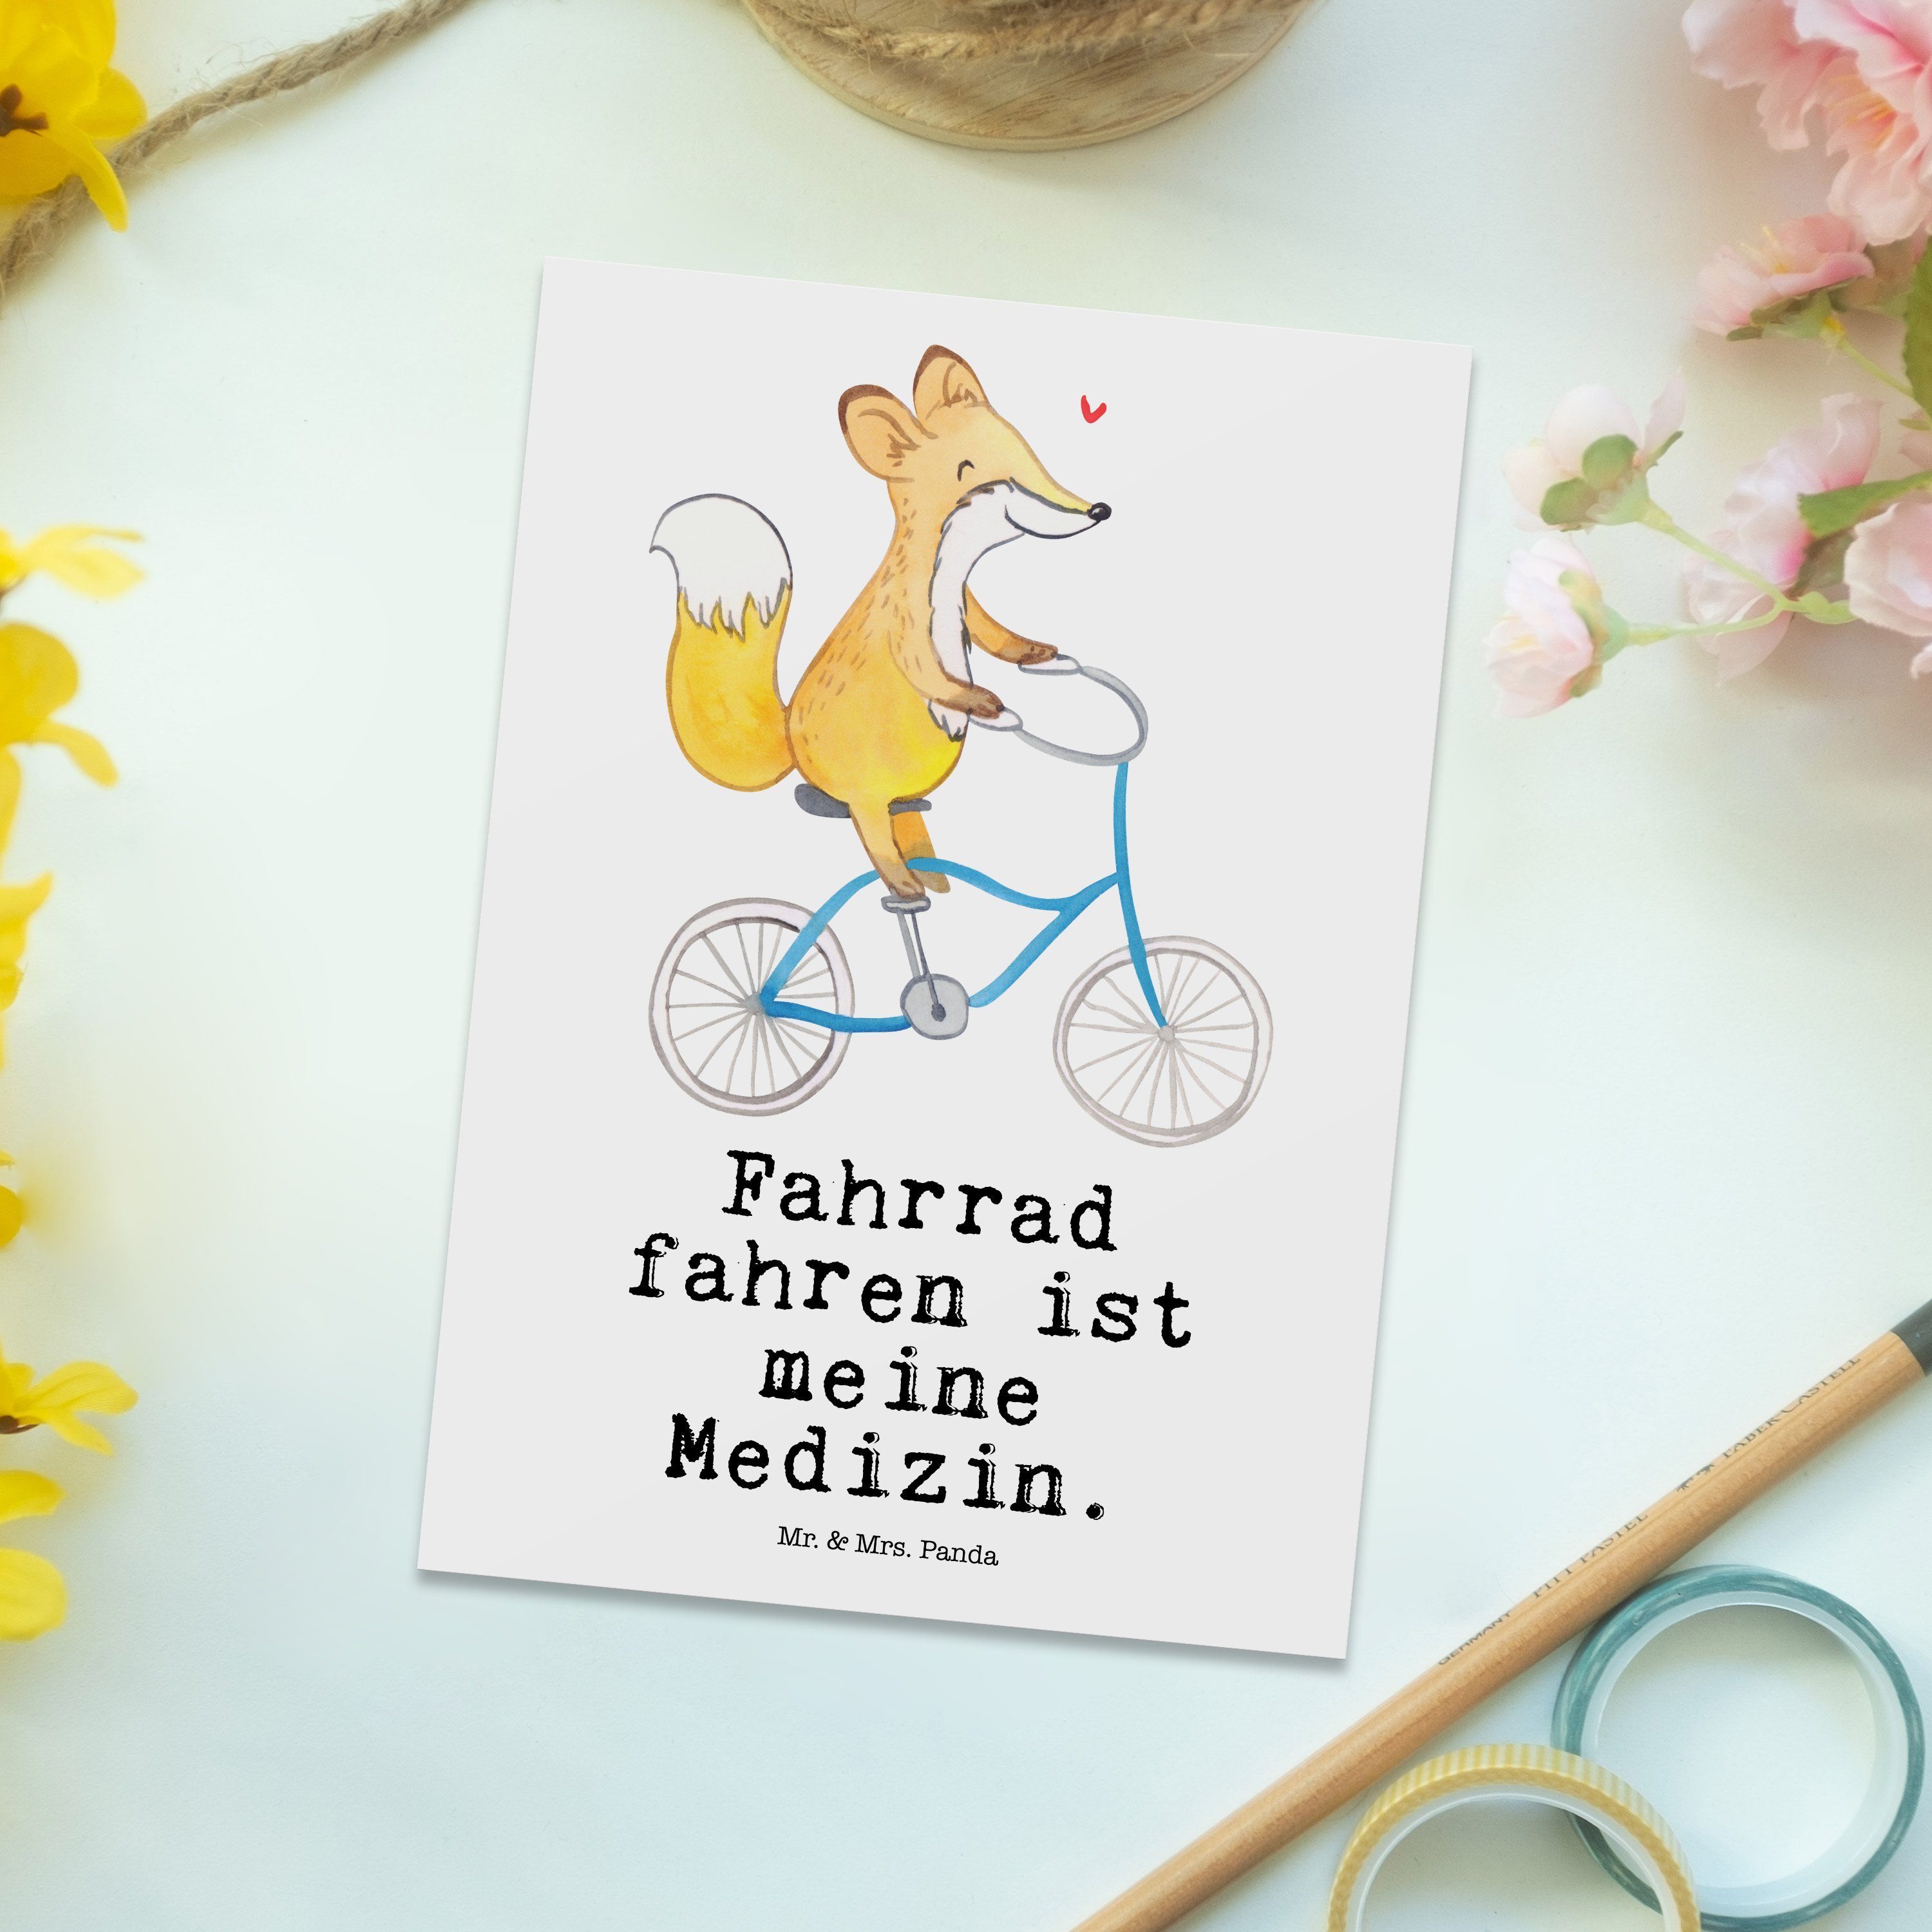 Mr. & Mrs. Geschenk, Schenken, Fahrrad - Radsport, E fahren Panda Medizin Weiß - Postkarte Fuchs